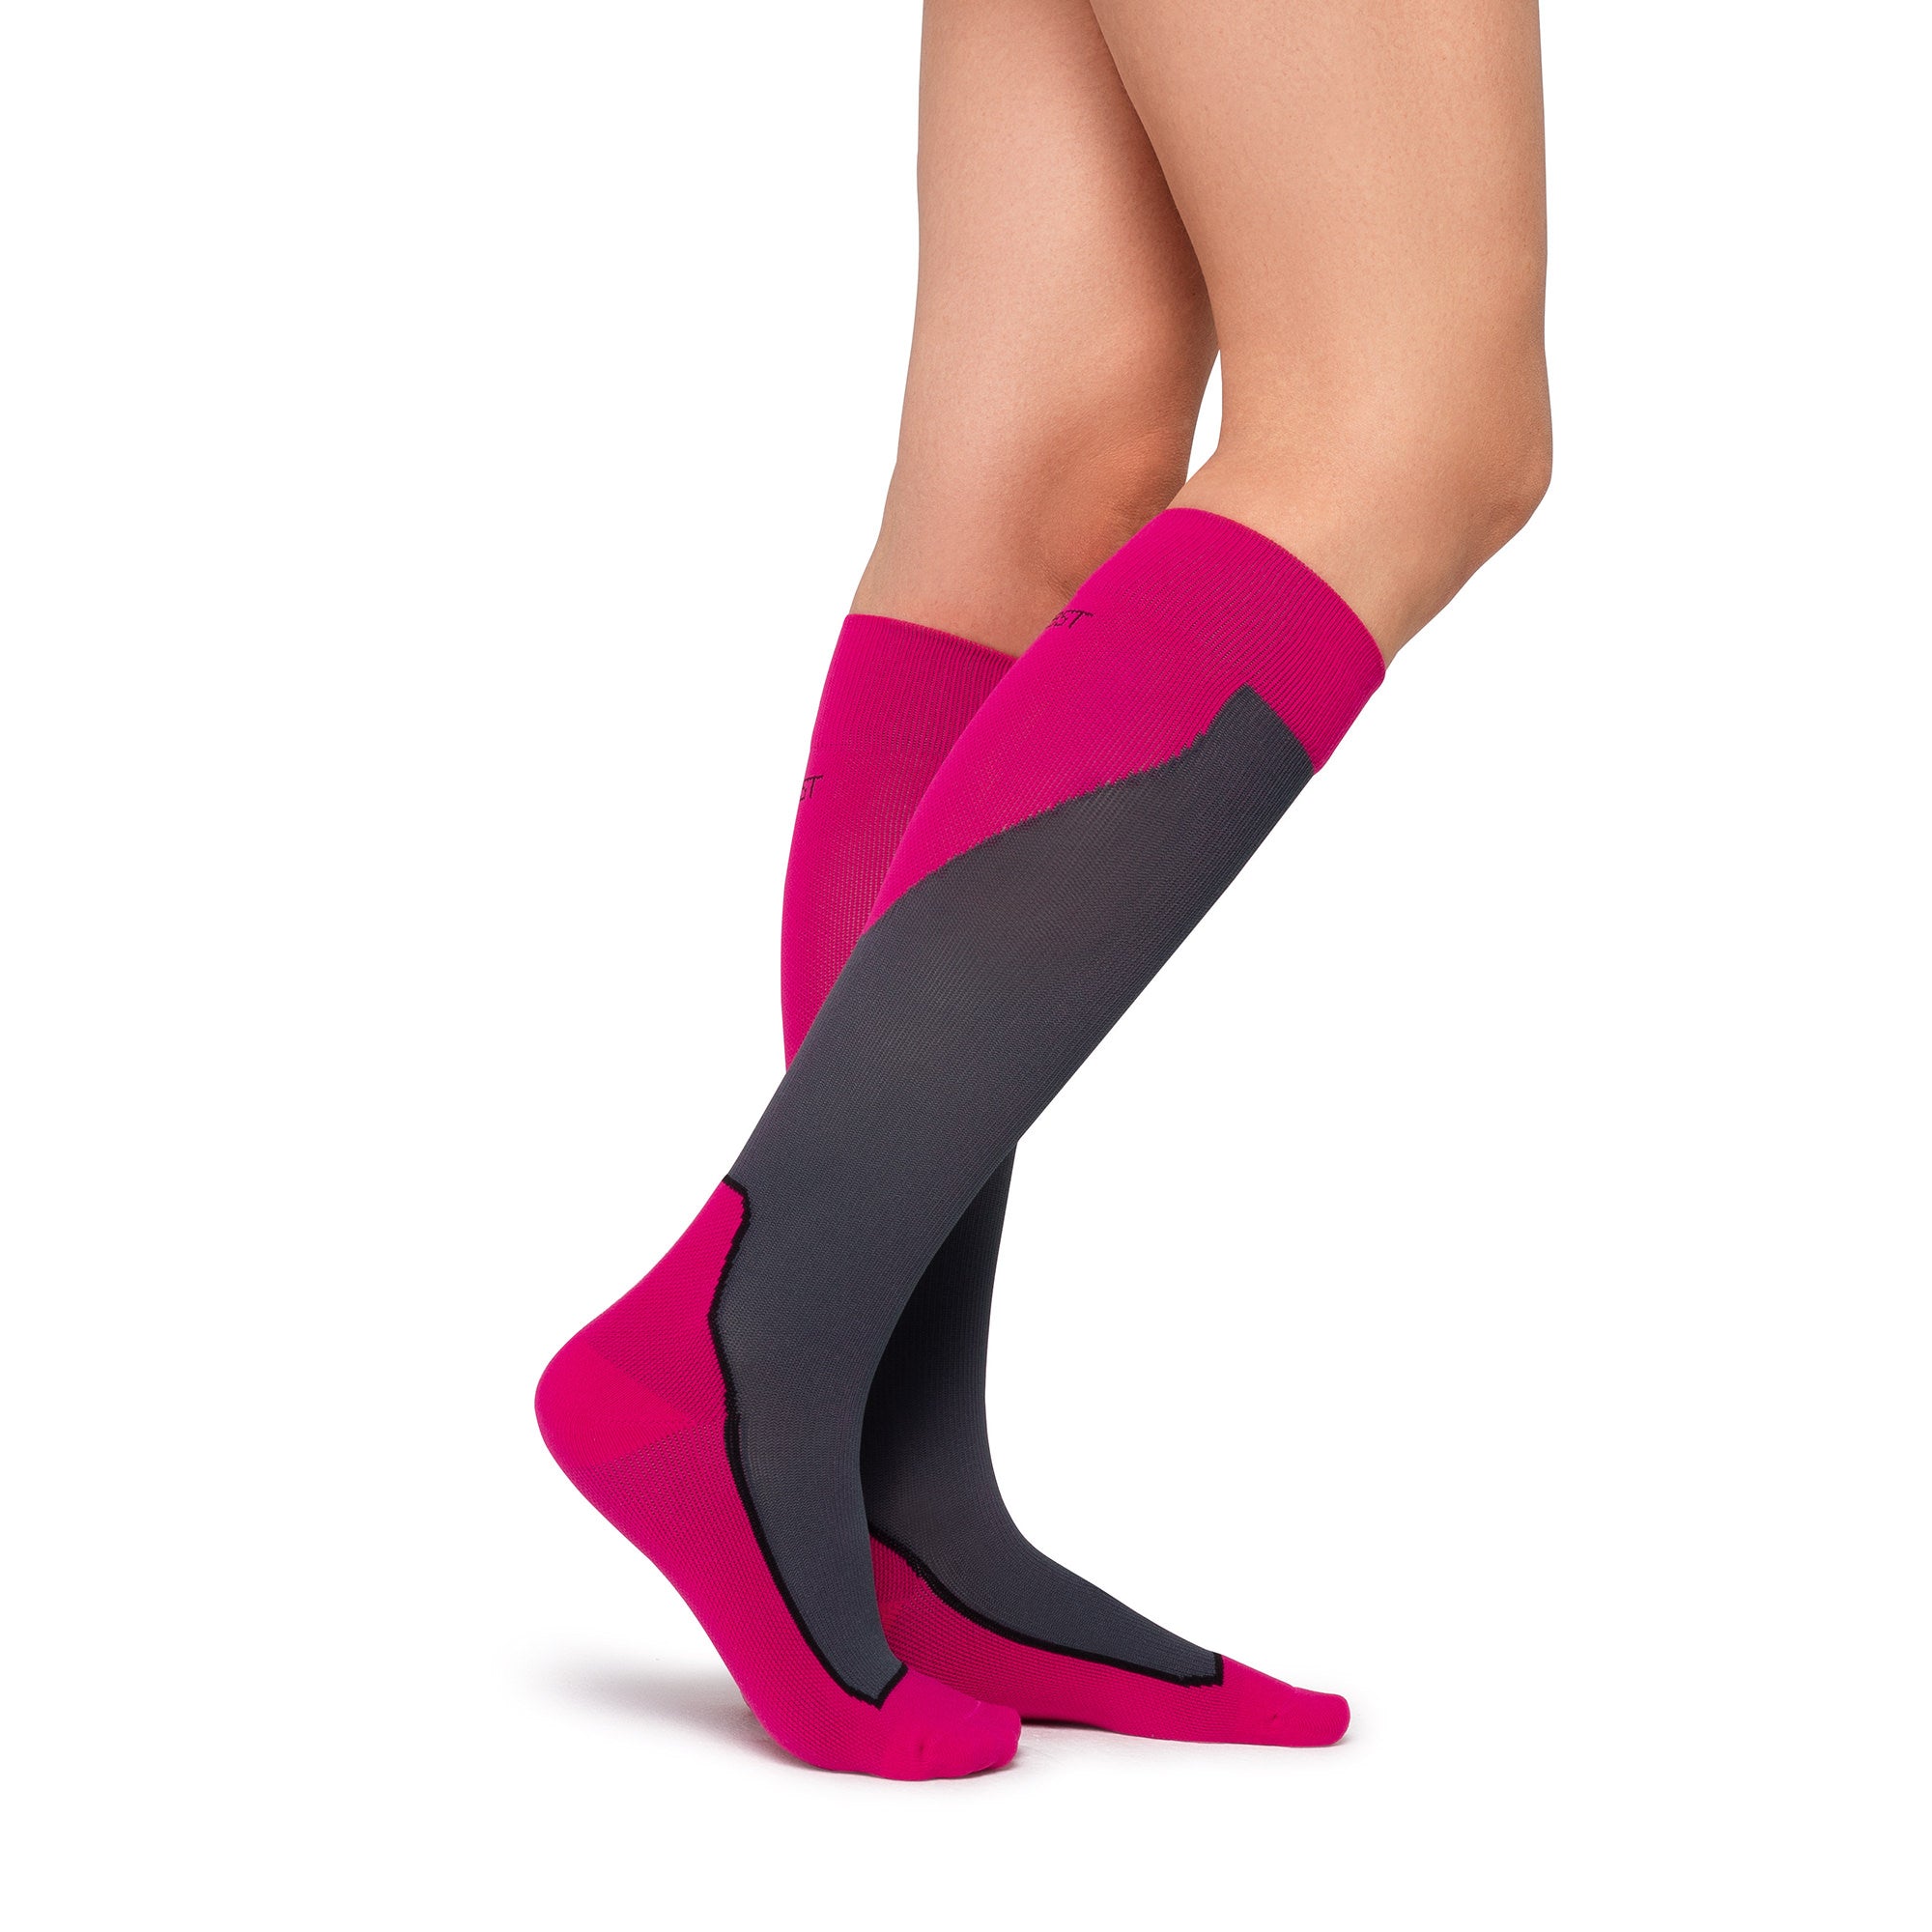 JOBST Sport 15-20 mmHg Compression Knee Socks